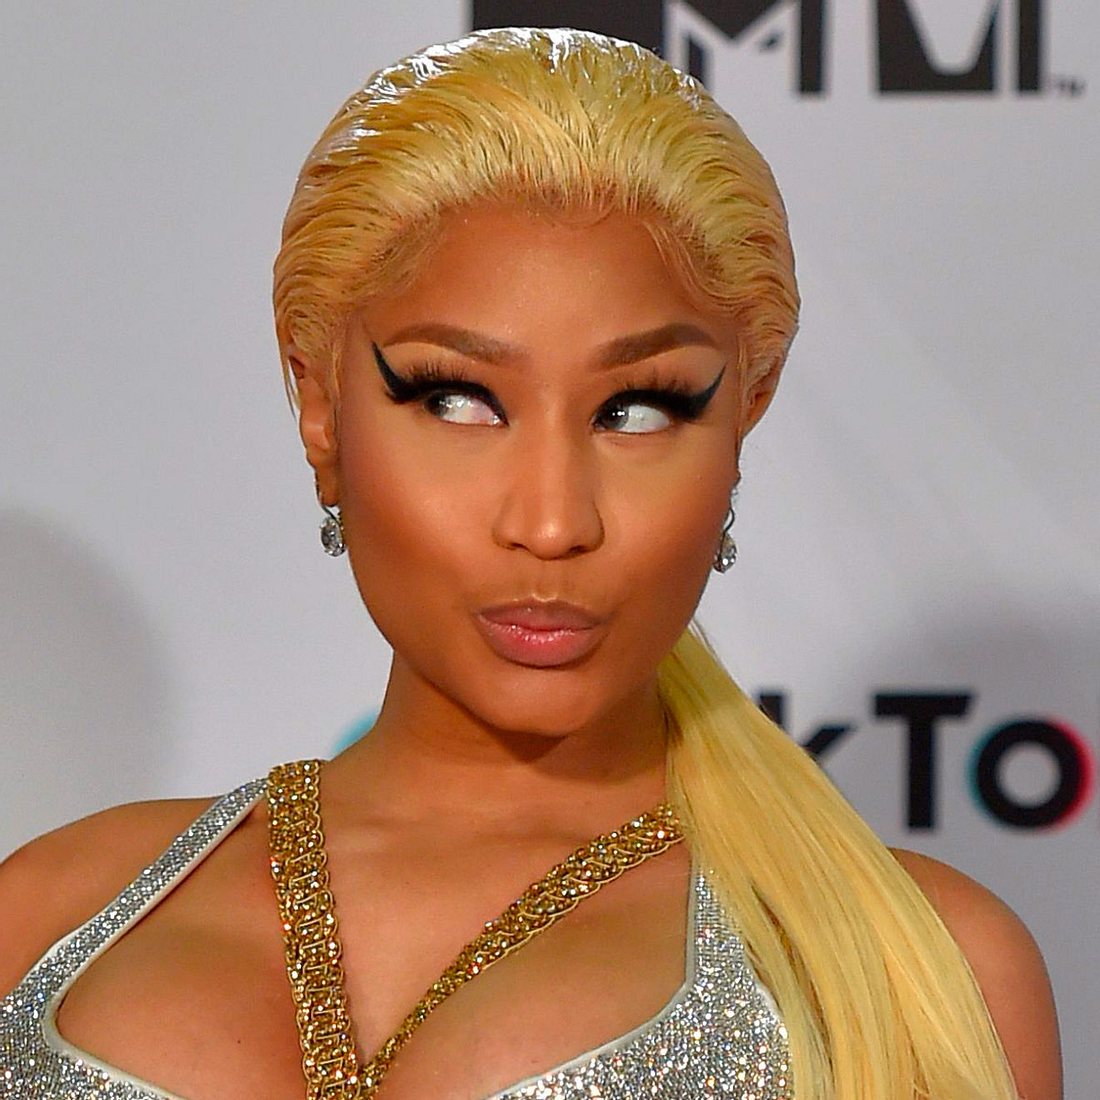 Nicki Minaj hat 97,3 Millionen Abonnenten auf Instagram.